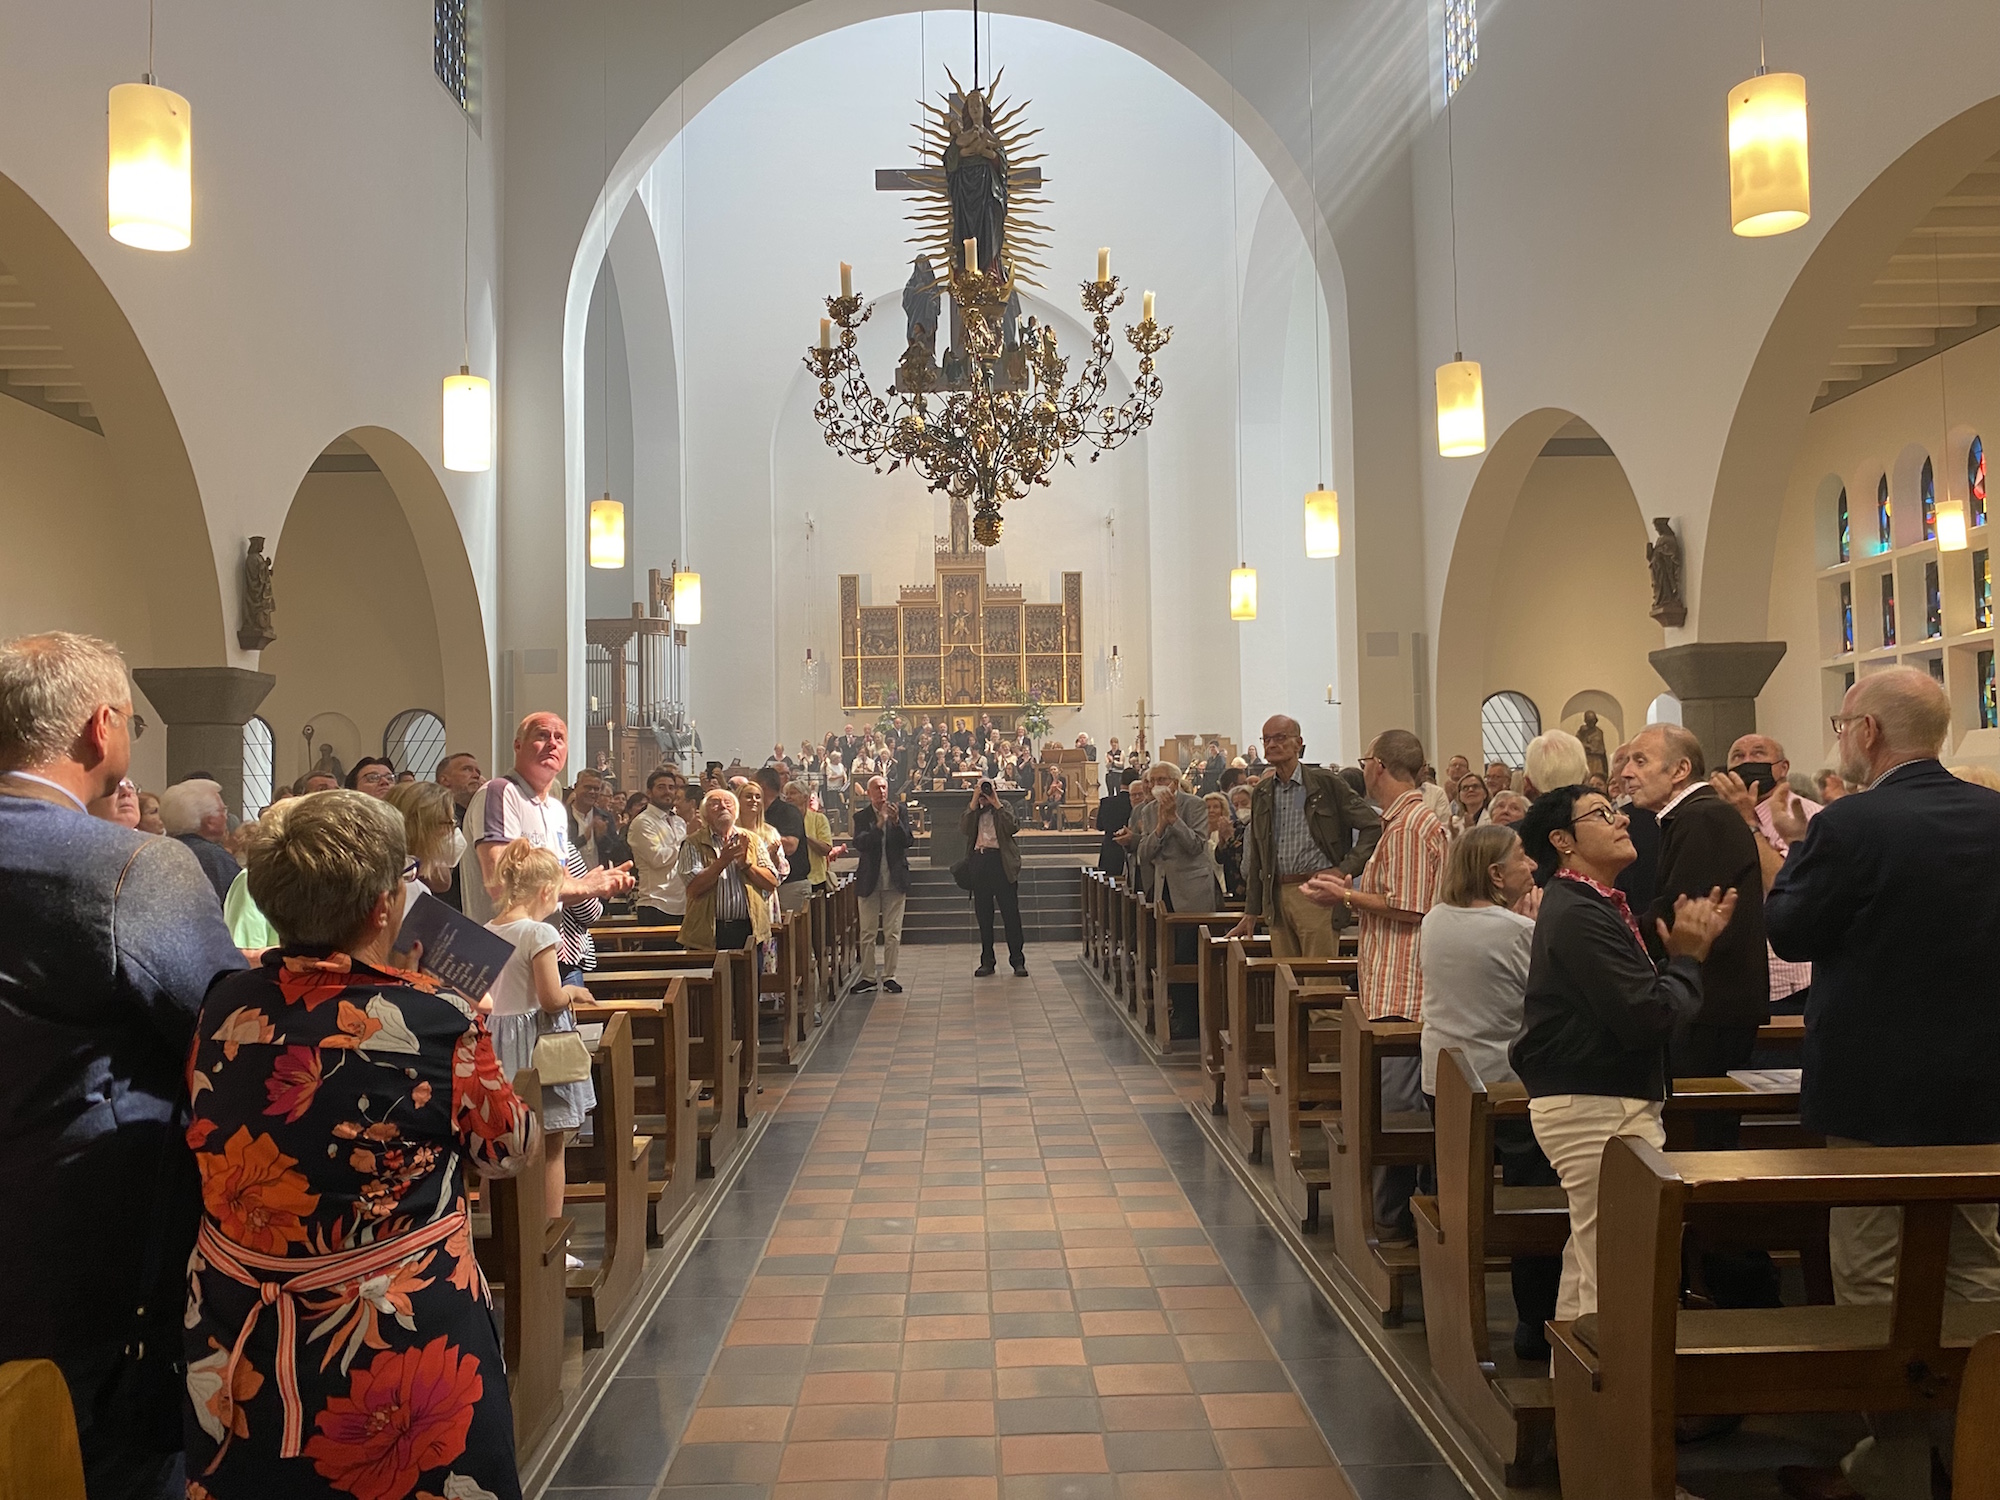 Am Ende des Festgottesdienstes applaudierten die Besucher dem Kantor Stefan Emanuel Knauer, dem Orgelbauer und den vielen Spendern. (c) Garnet Manecke